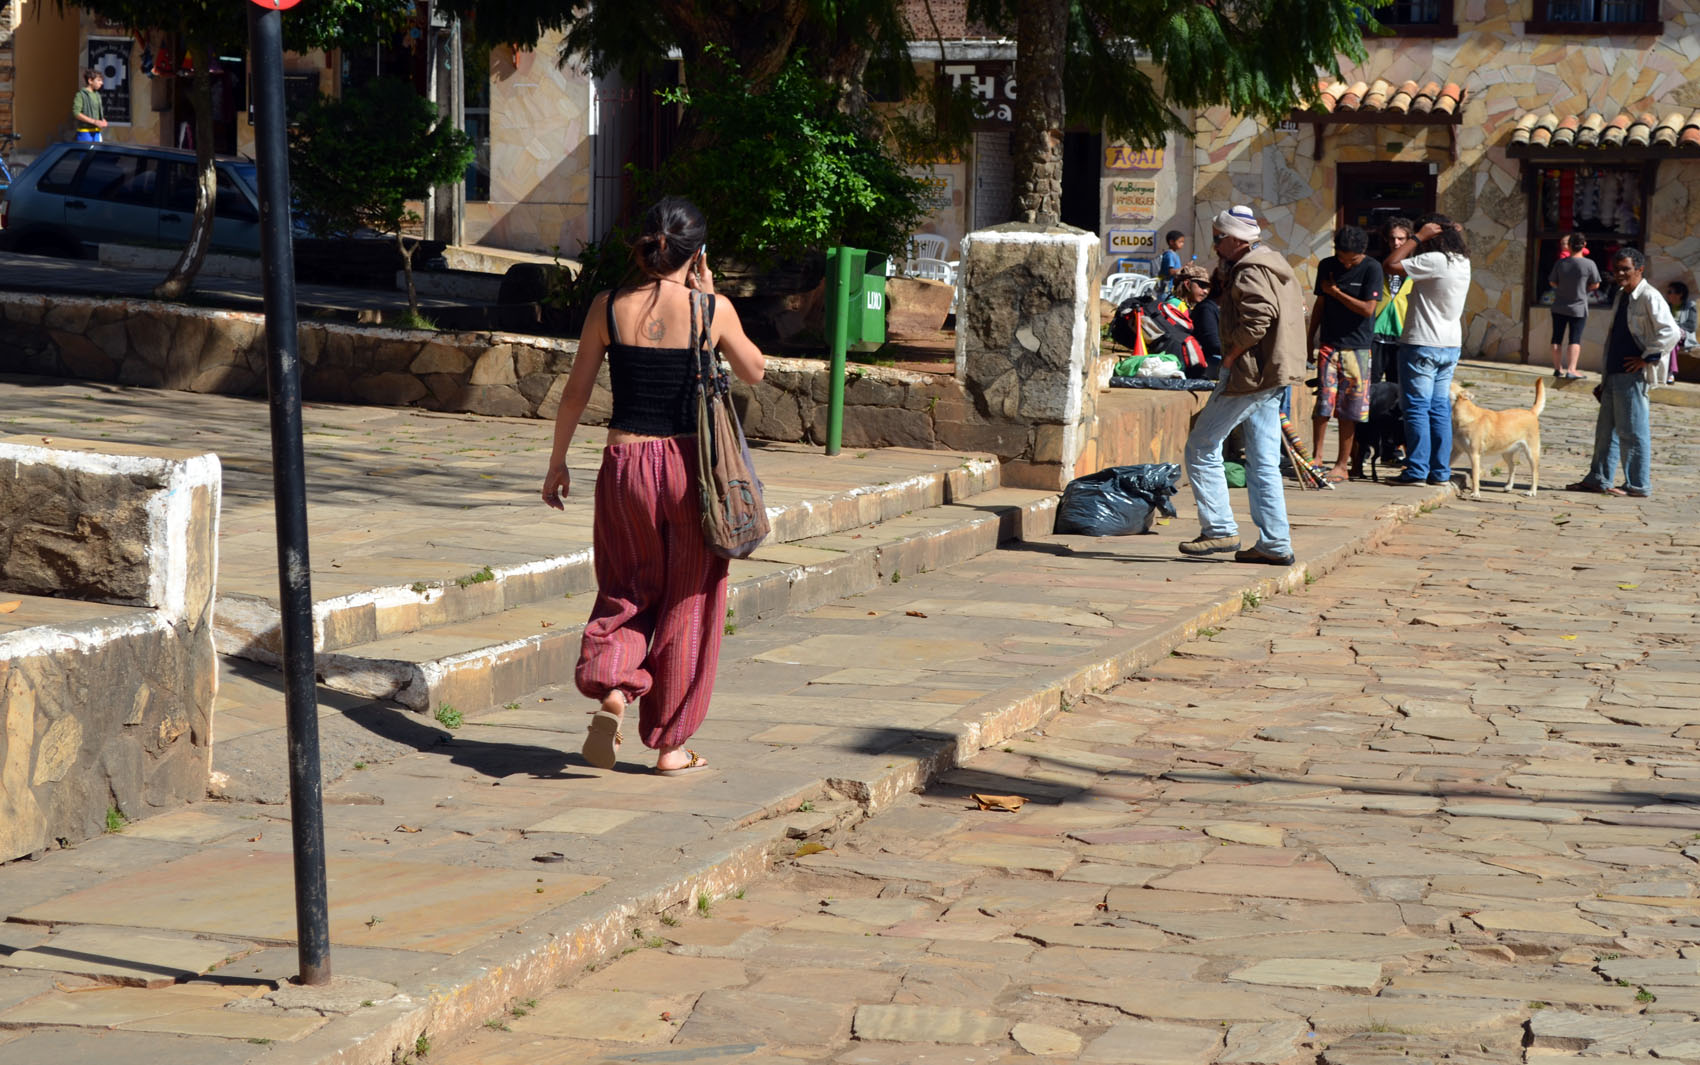 Estilo alternativo está presente nas ruas de São Tomé das Letras